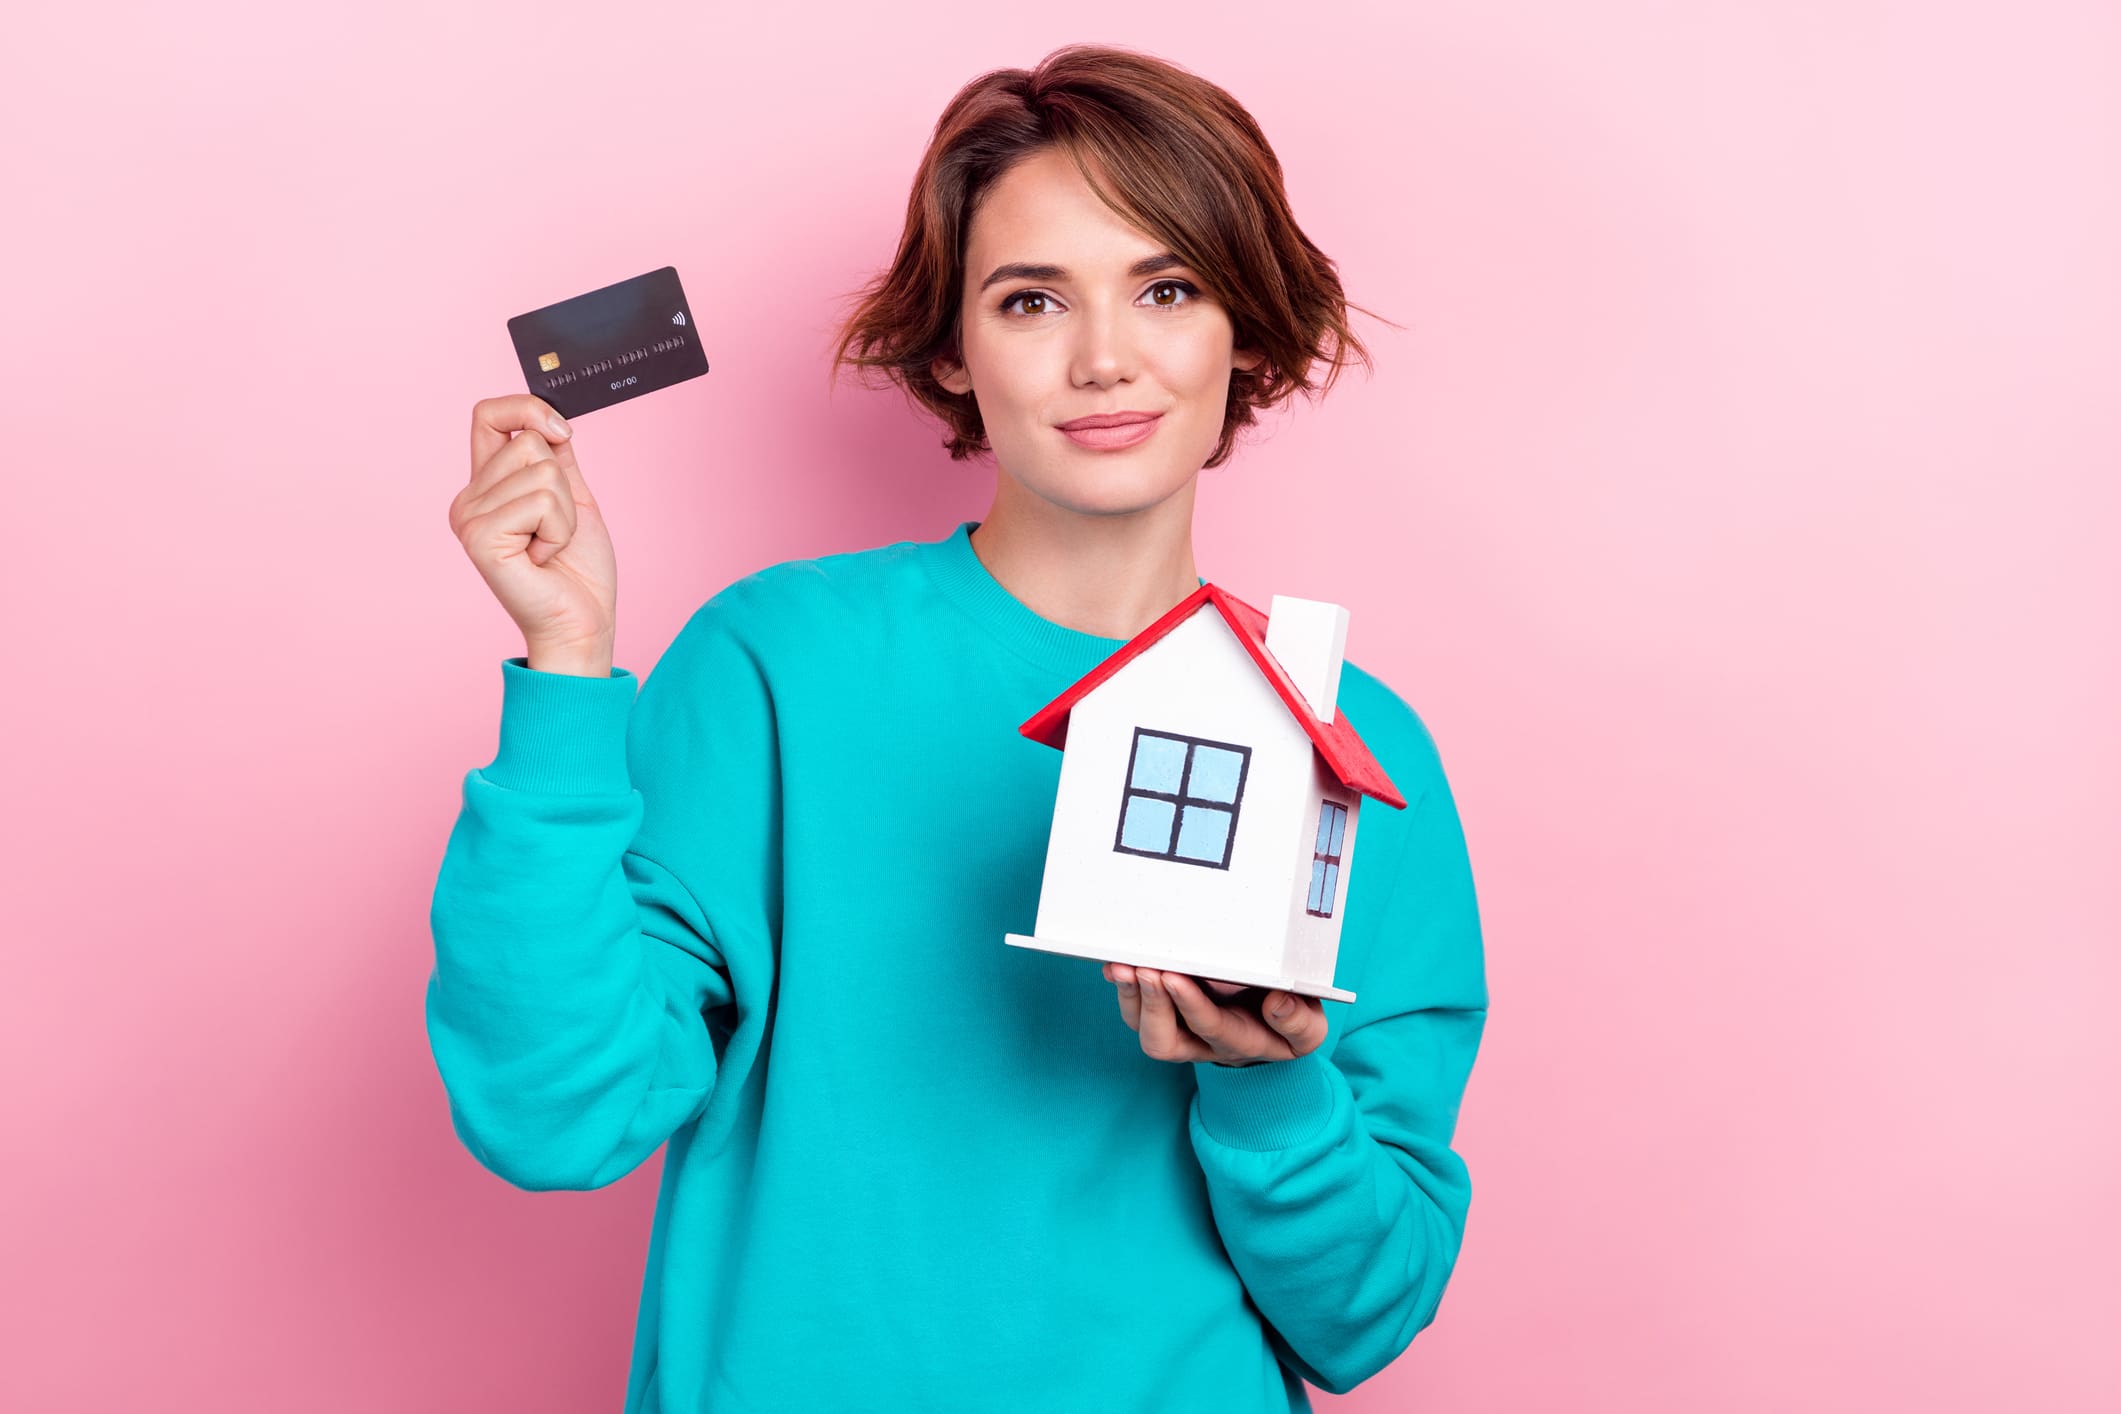 fiatal nő türkíz pulóverben, rózsaszín fal előtt, kezében bankkártya és egy házikó. 20 millió forintot utal át az új lakásáért